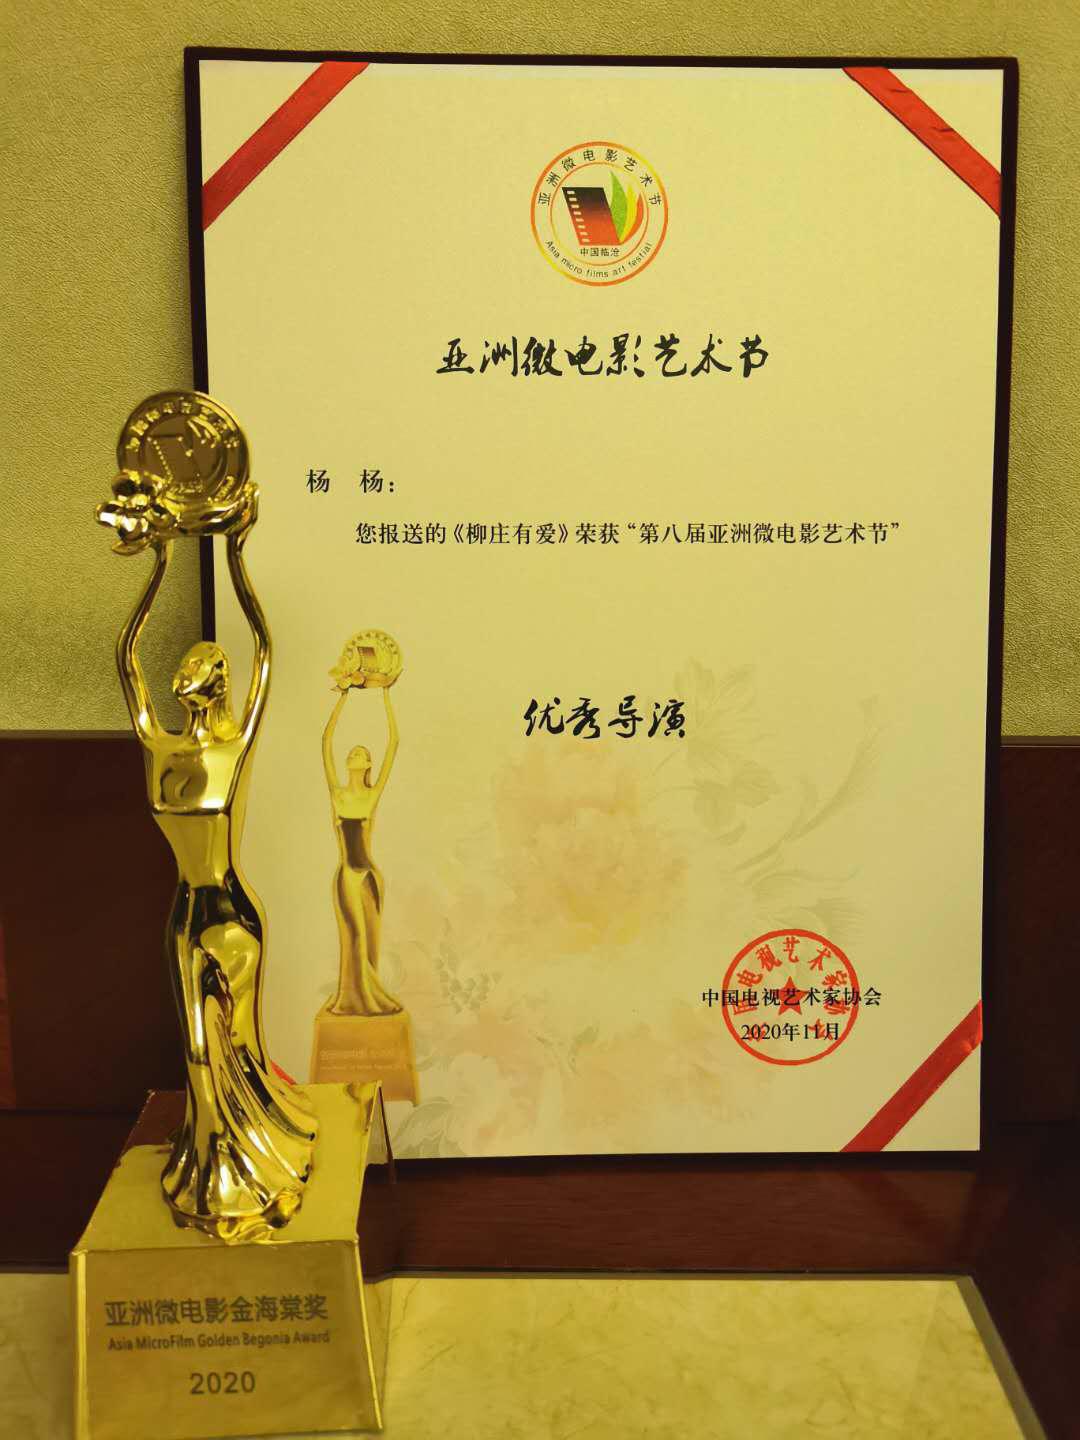 百万网友围观第五届宁波微电影节云颁奖 影片《南方姑娘》成为最大赢家